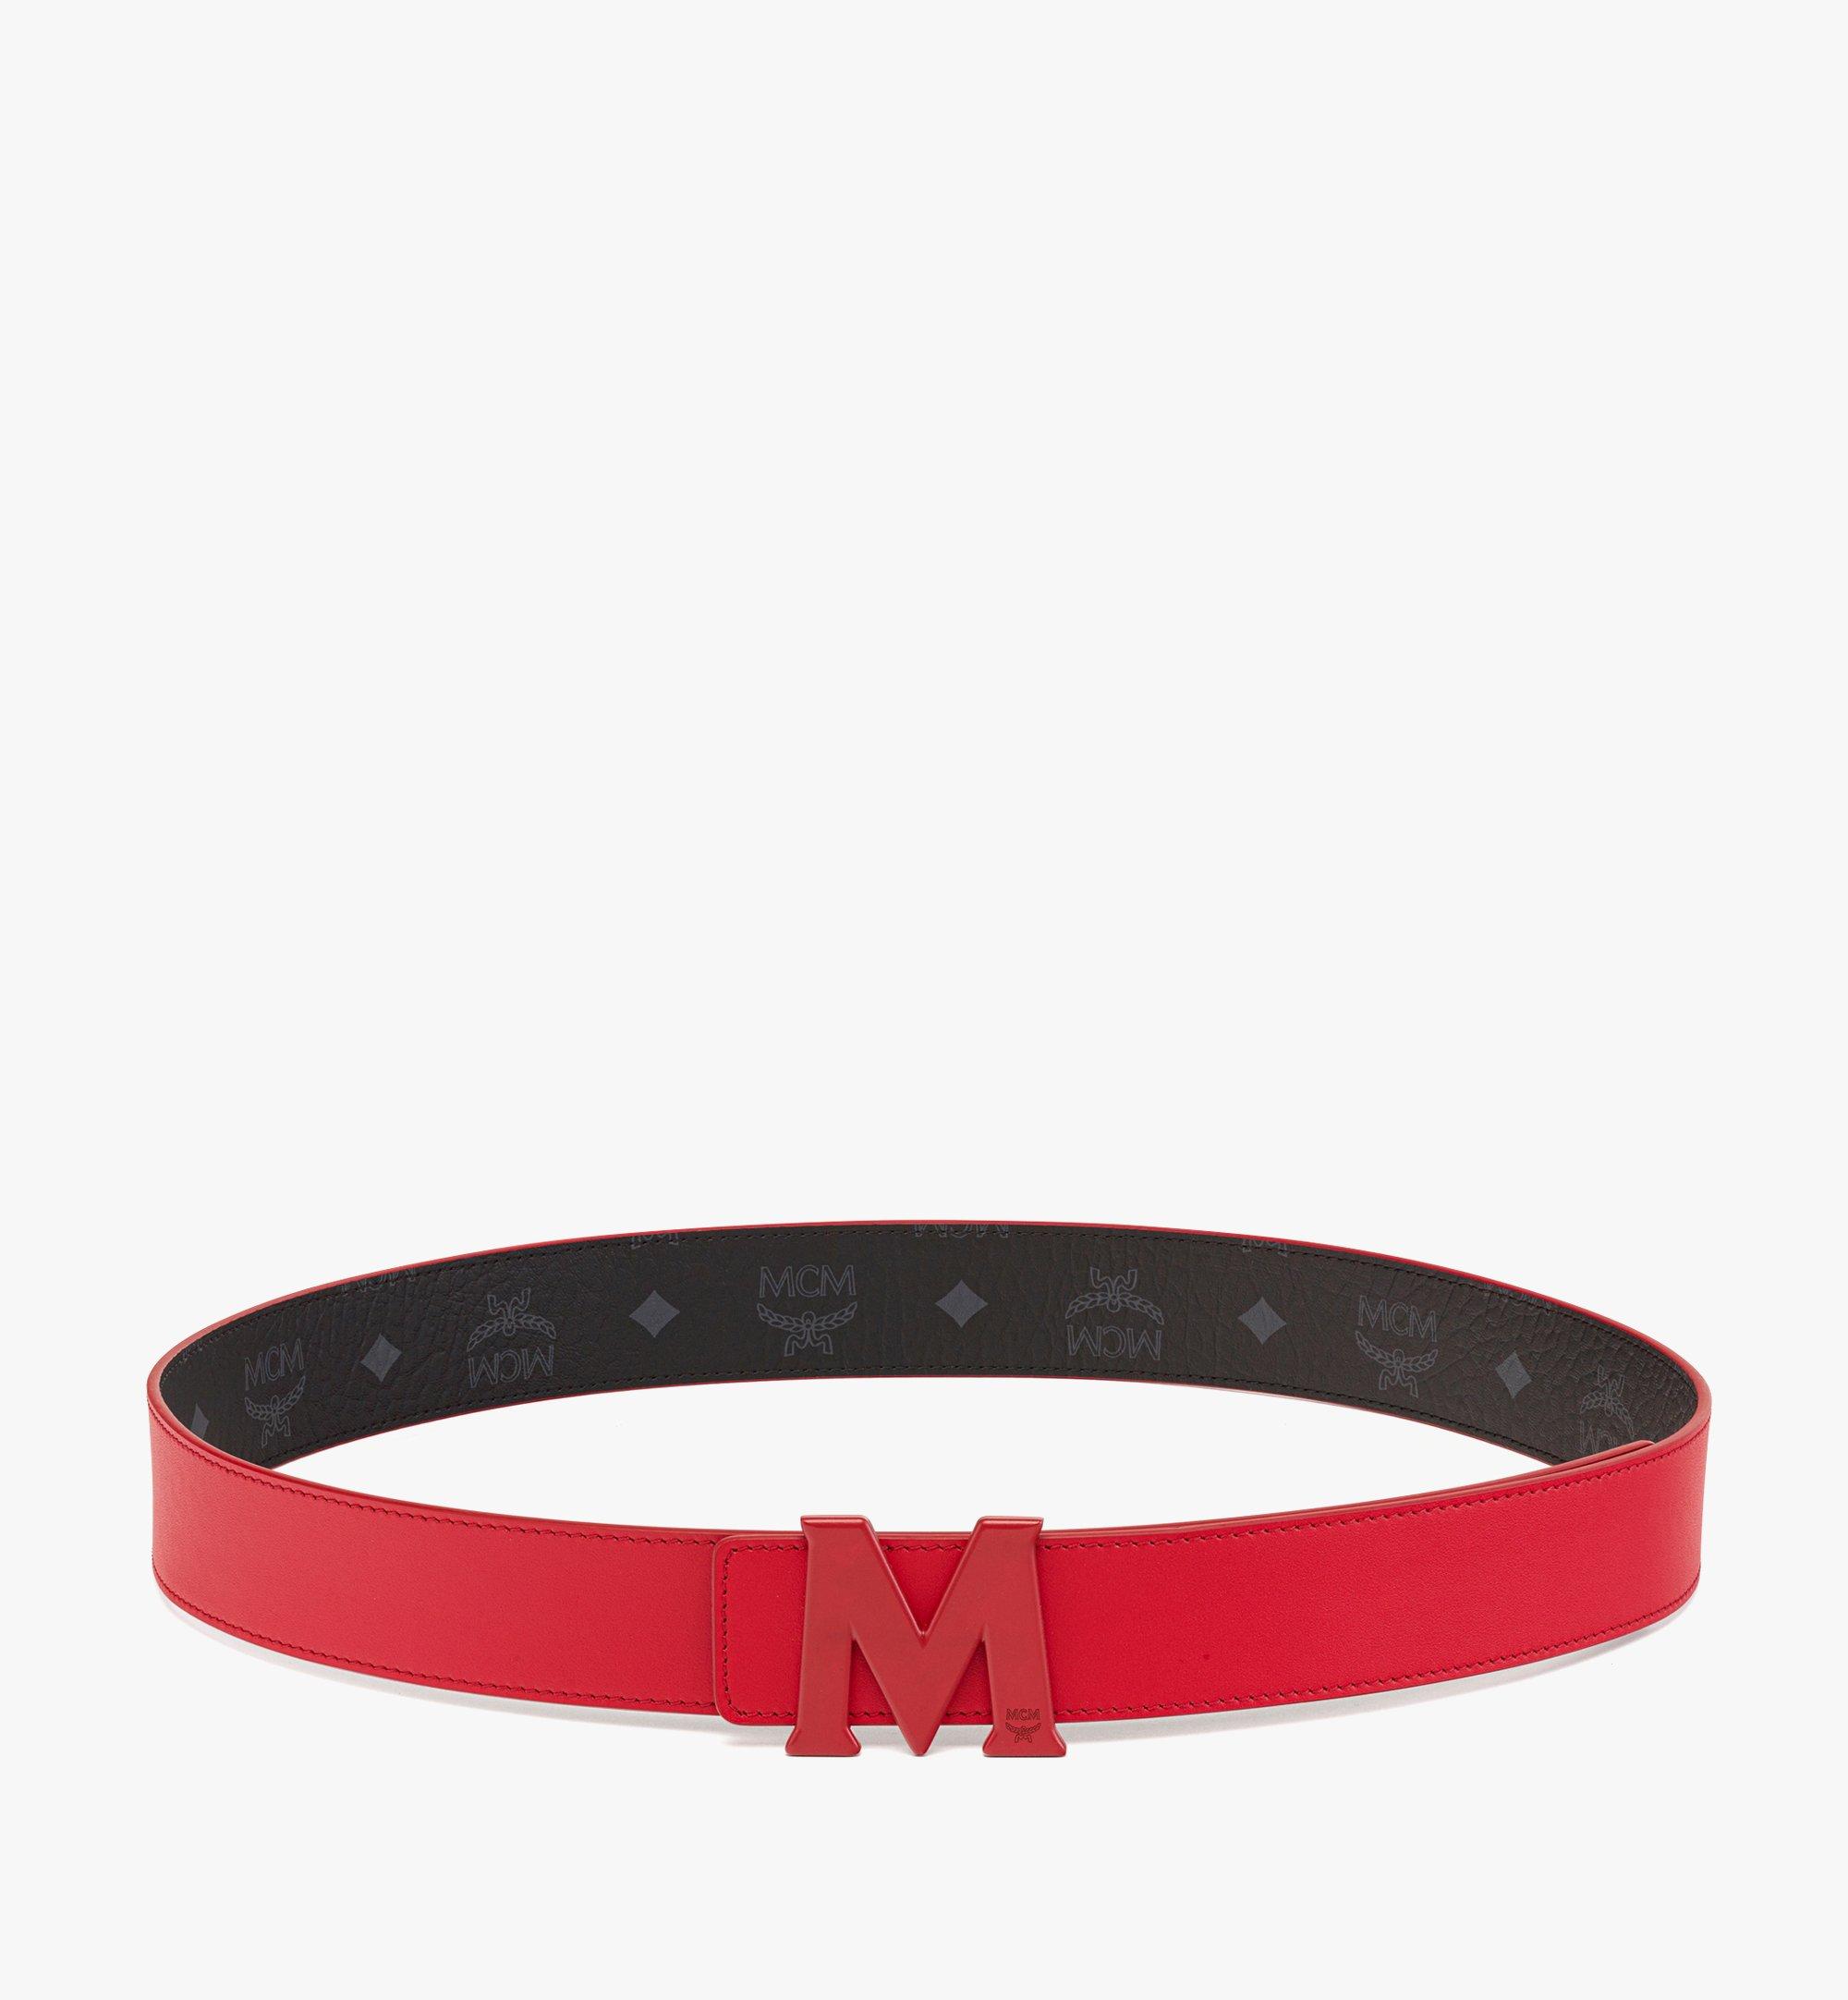 Designer Belts, Leather & Reversible Belts